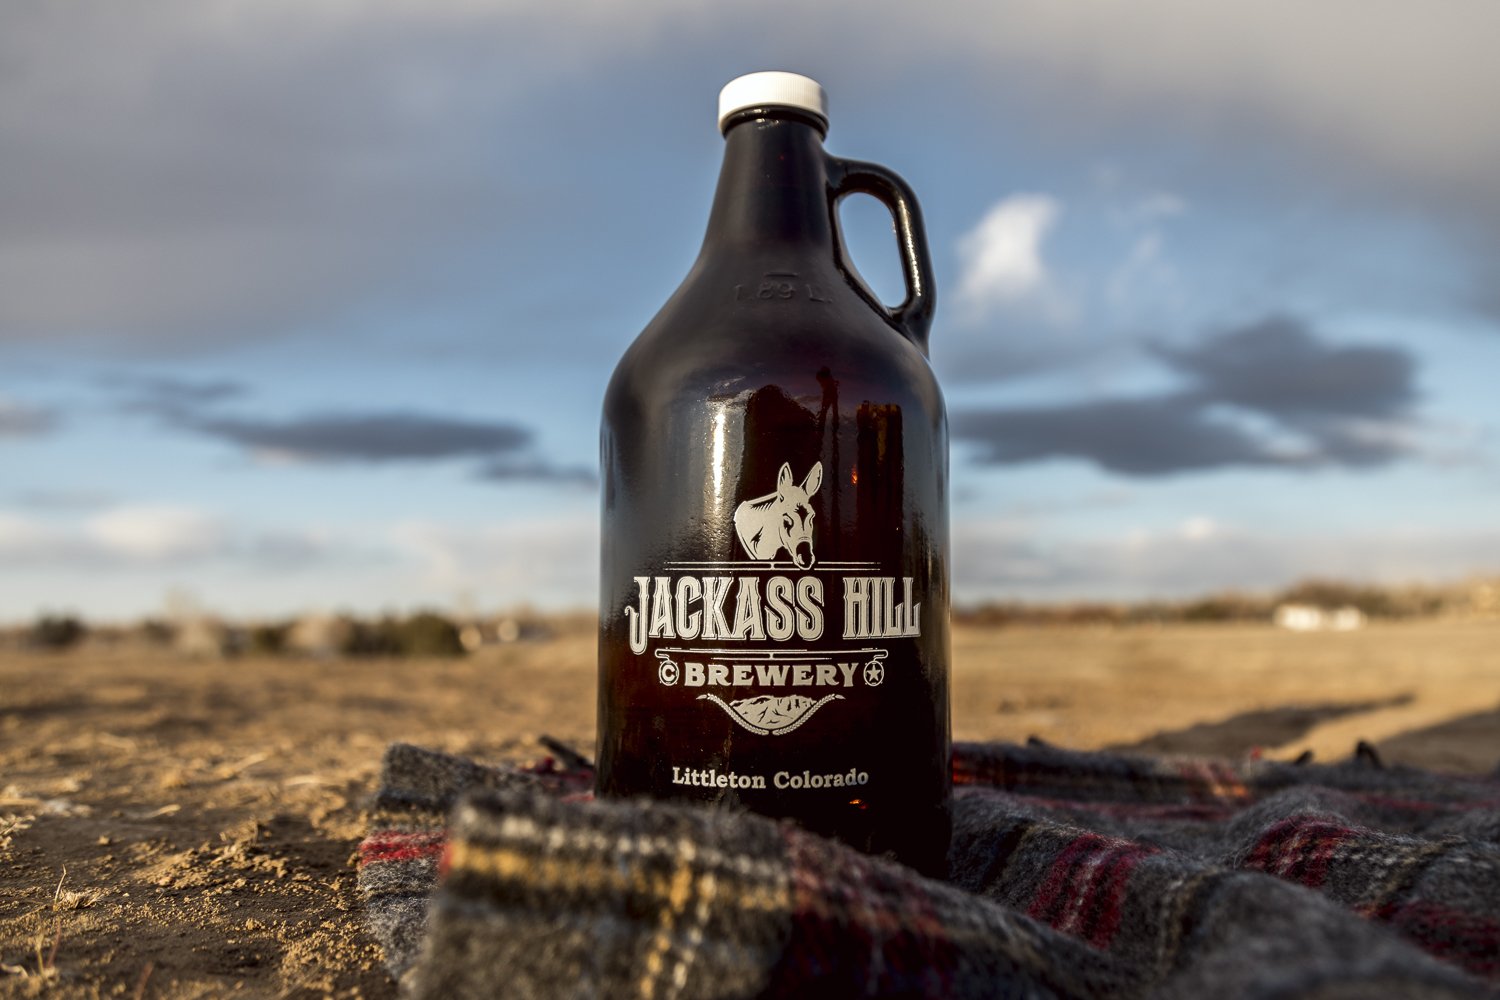 Jackass Hill Brewery